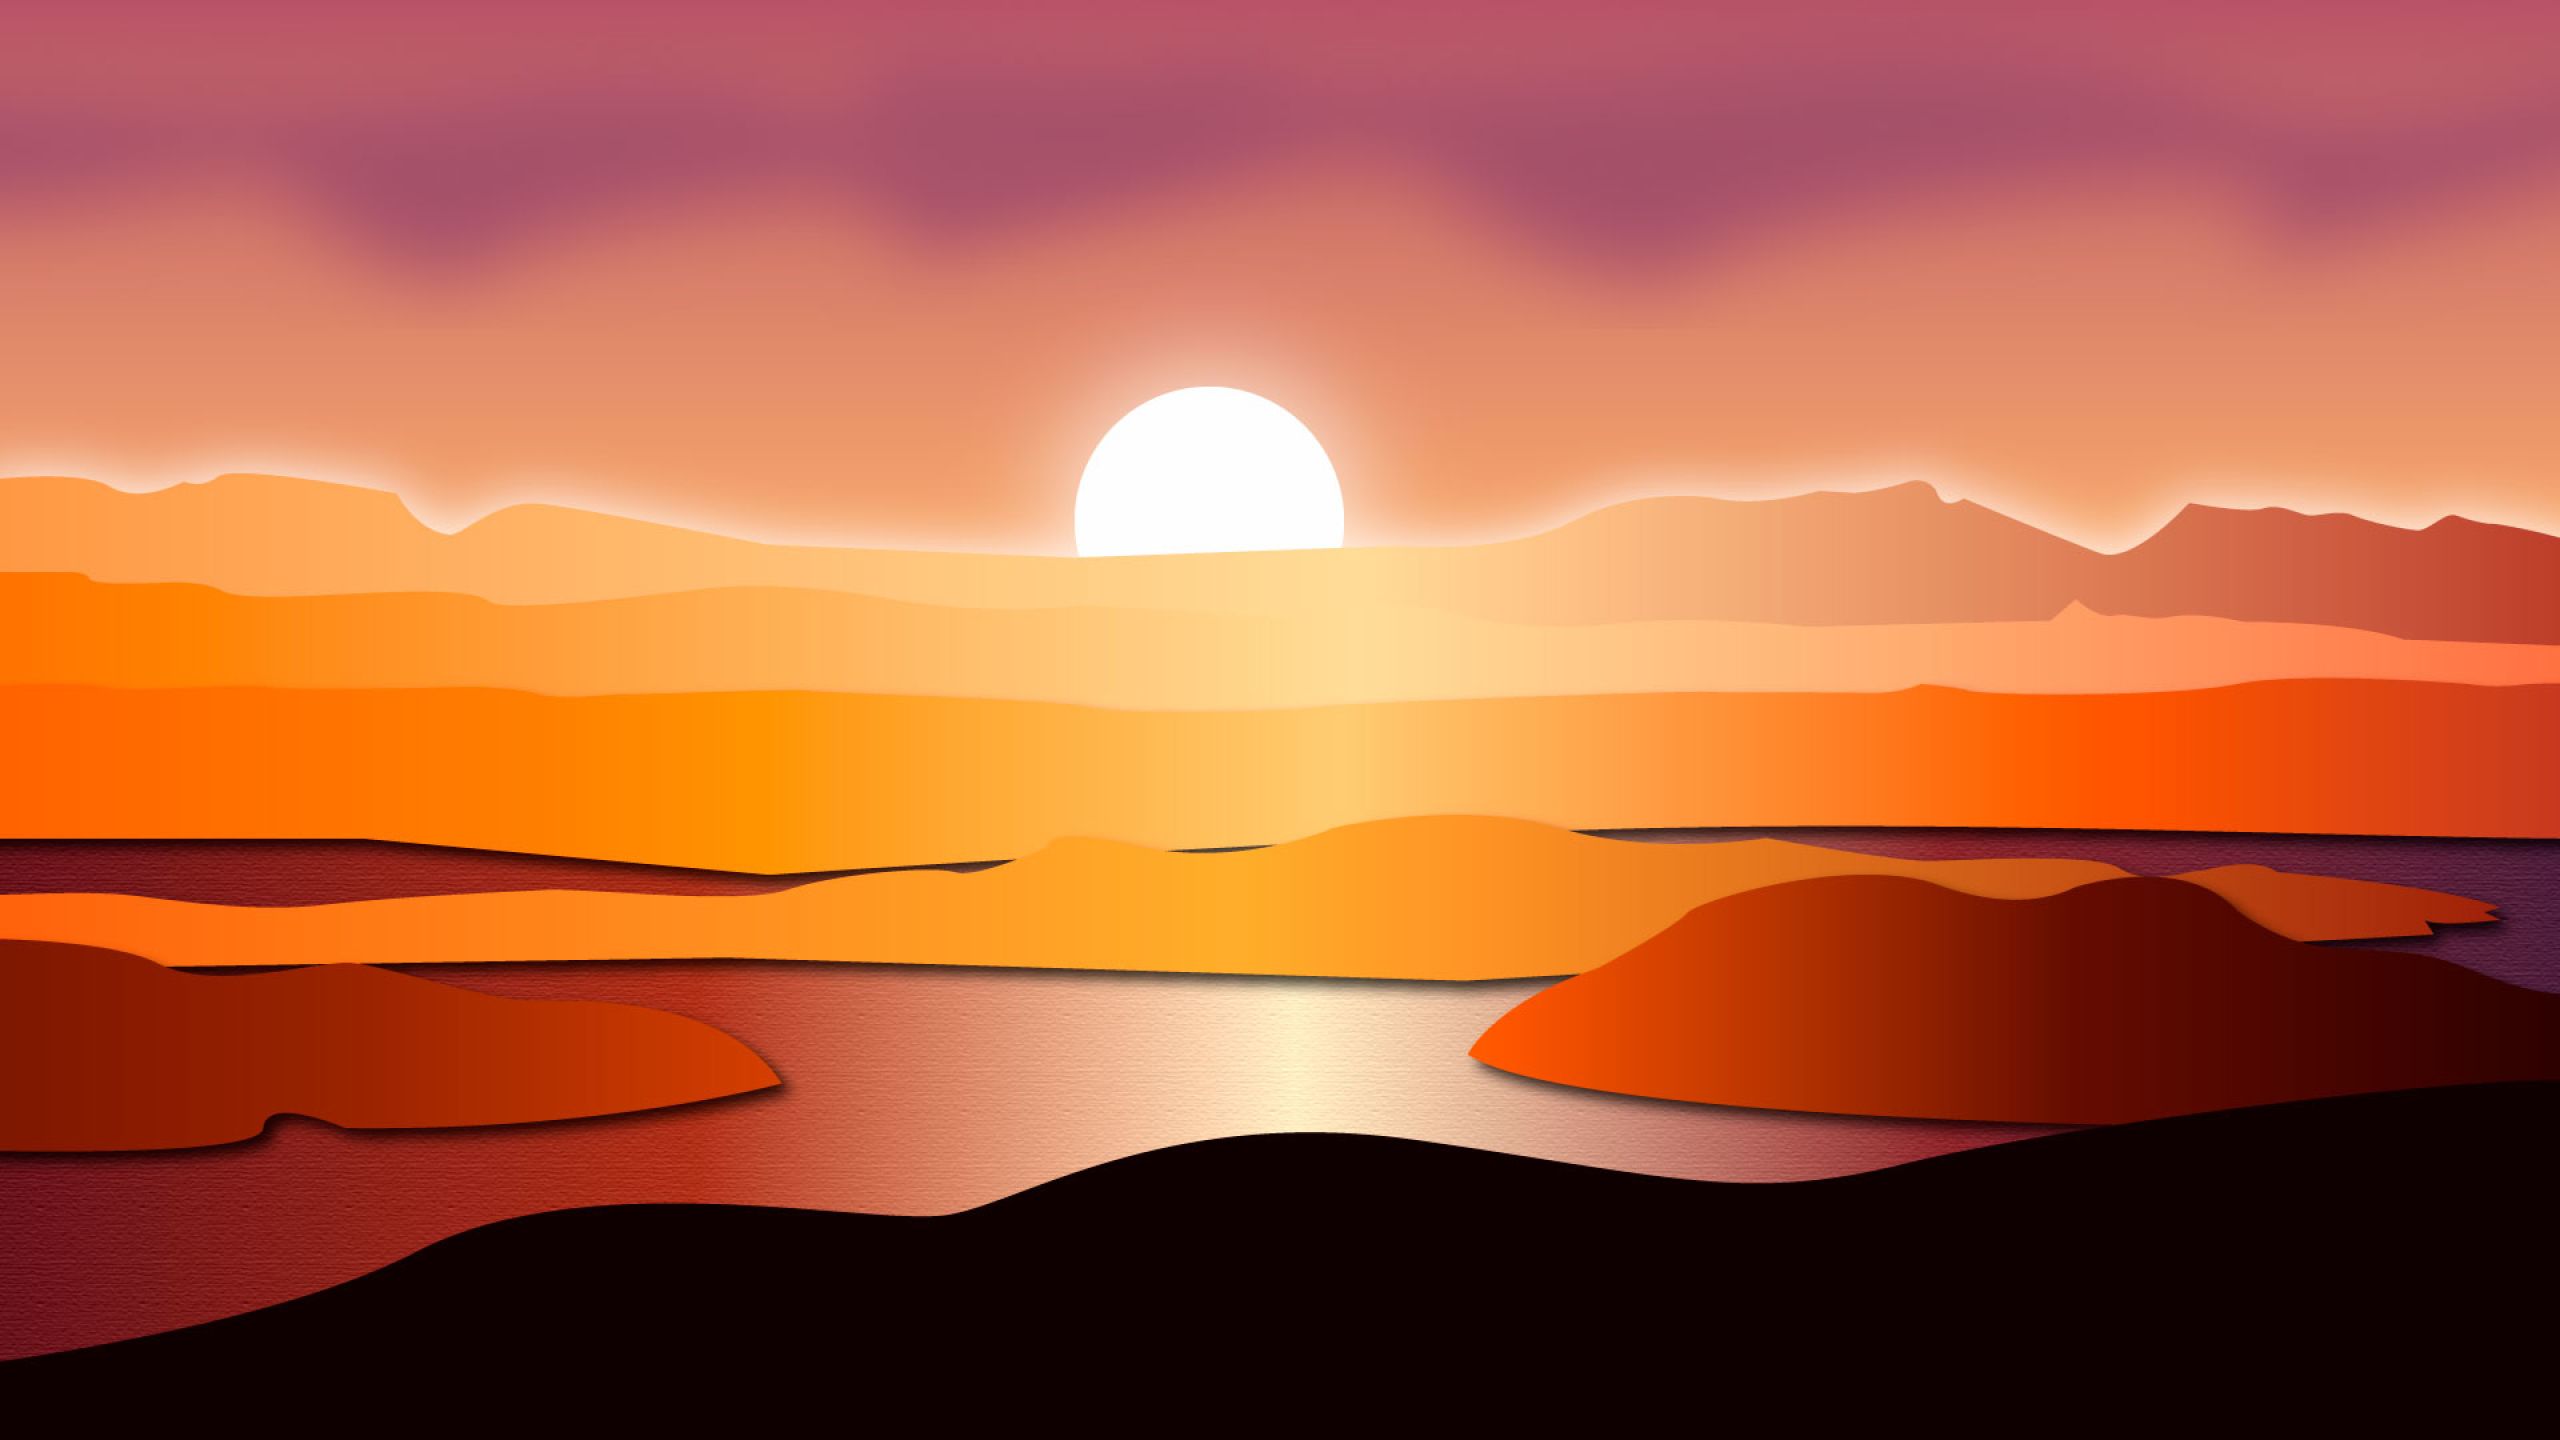 dusk landscape desktop wallpaper high definition